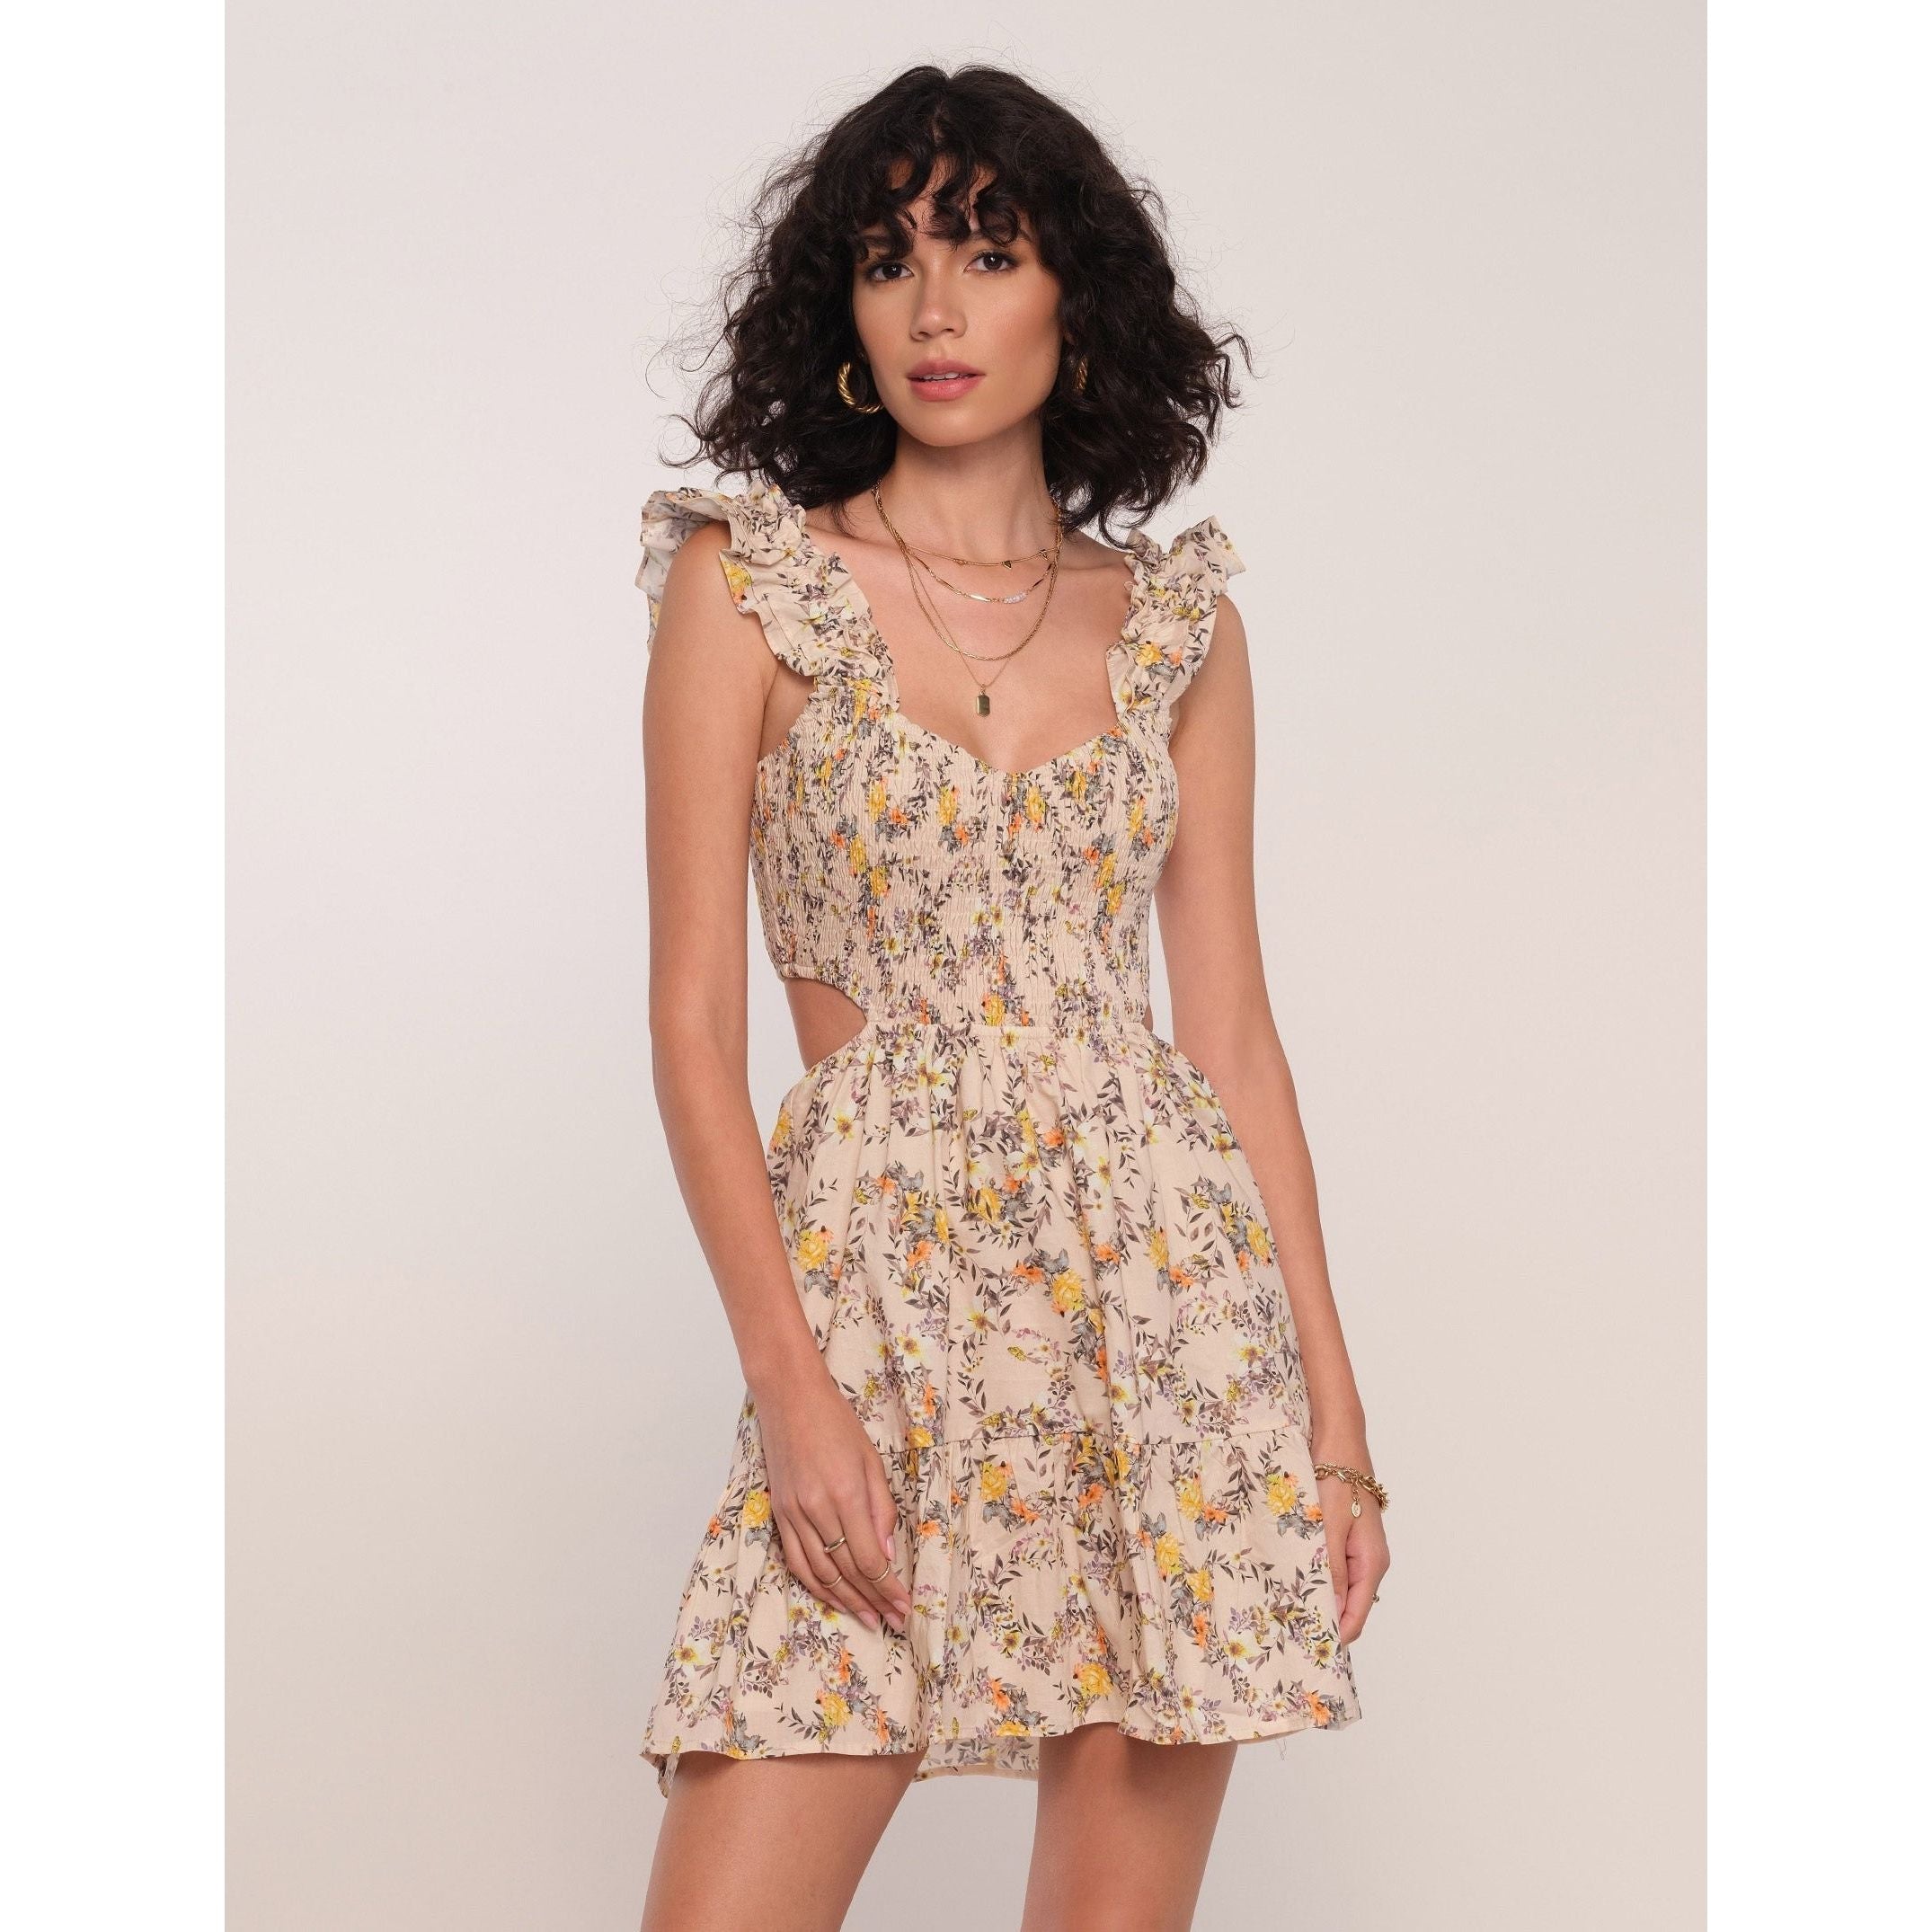 Heartloom - Waverly Dress in Wildflower-SQ1192264